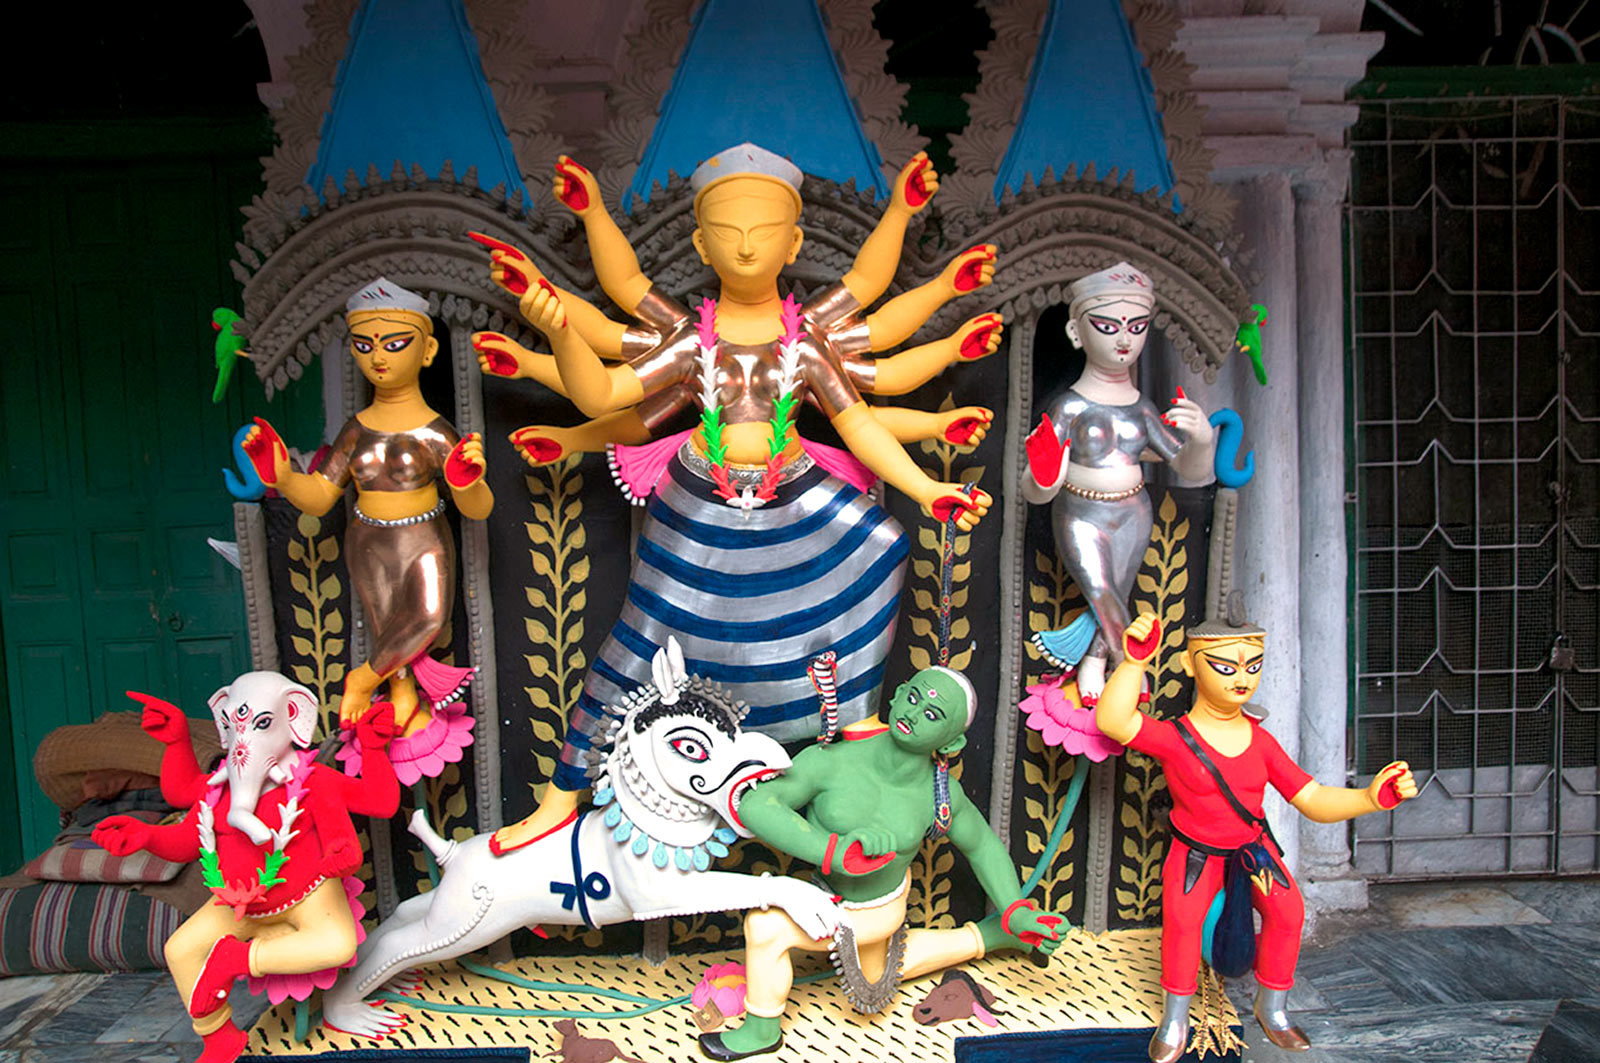 Preparing celebrating Durga Puja Festival in Kolkata